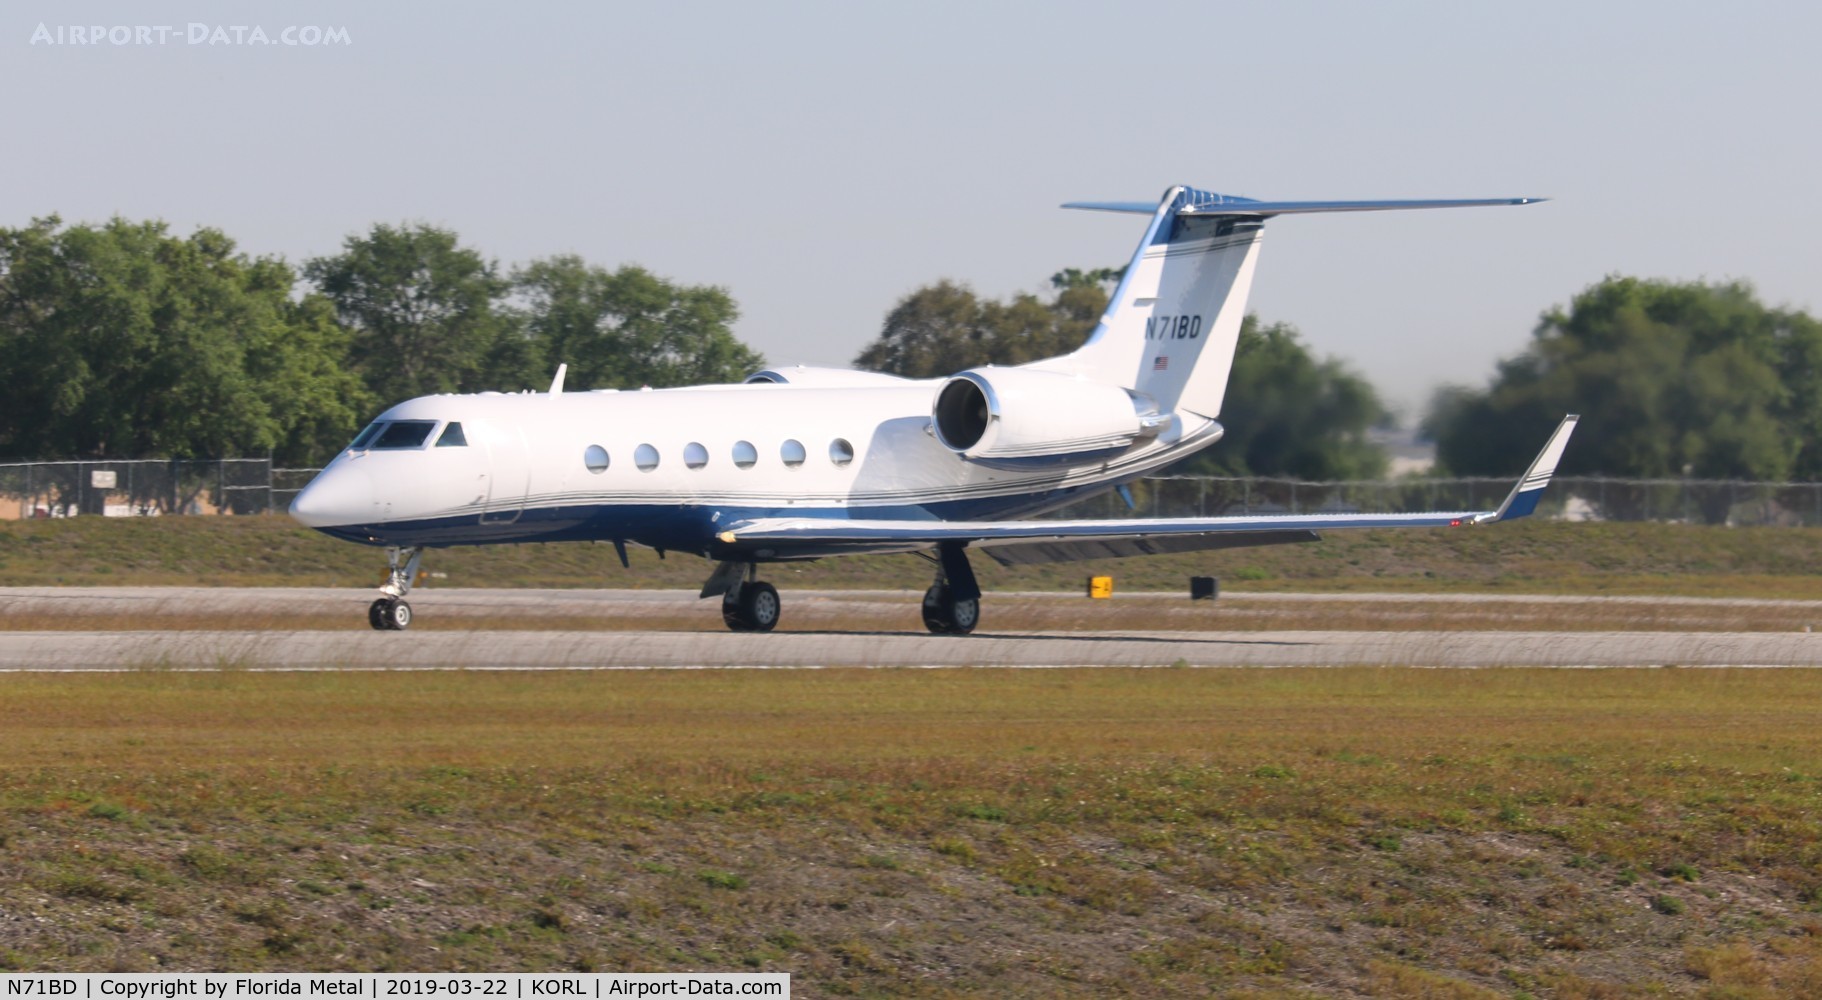 N71BD, 2000 Gulfstream Aerospace G-IV-SP C/N 1415, G-IV zx